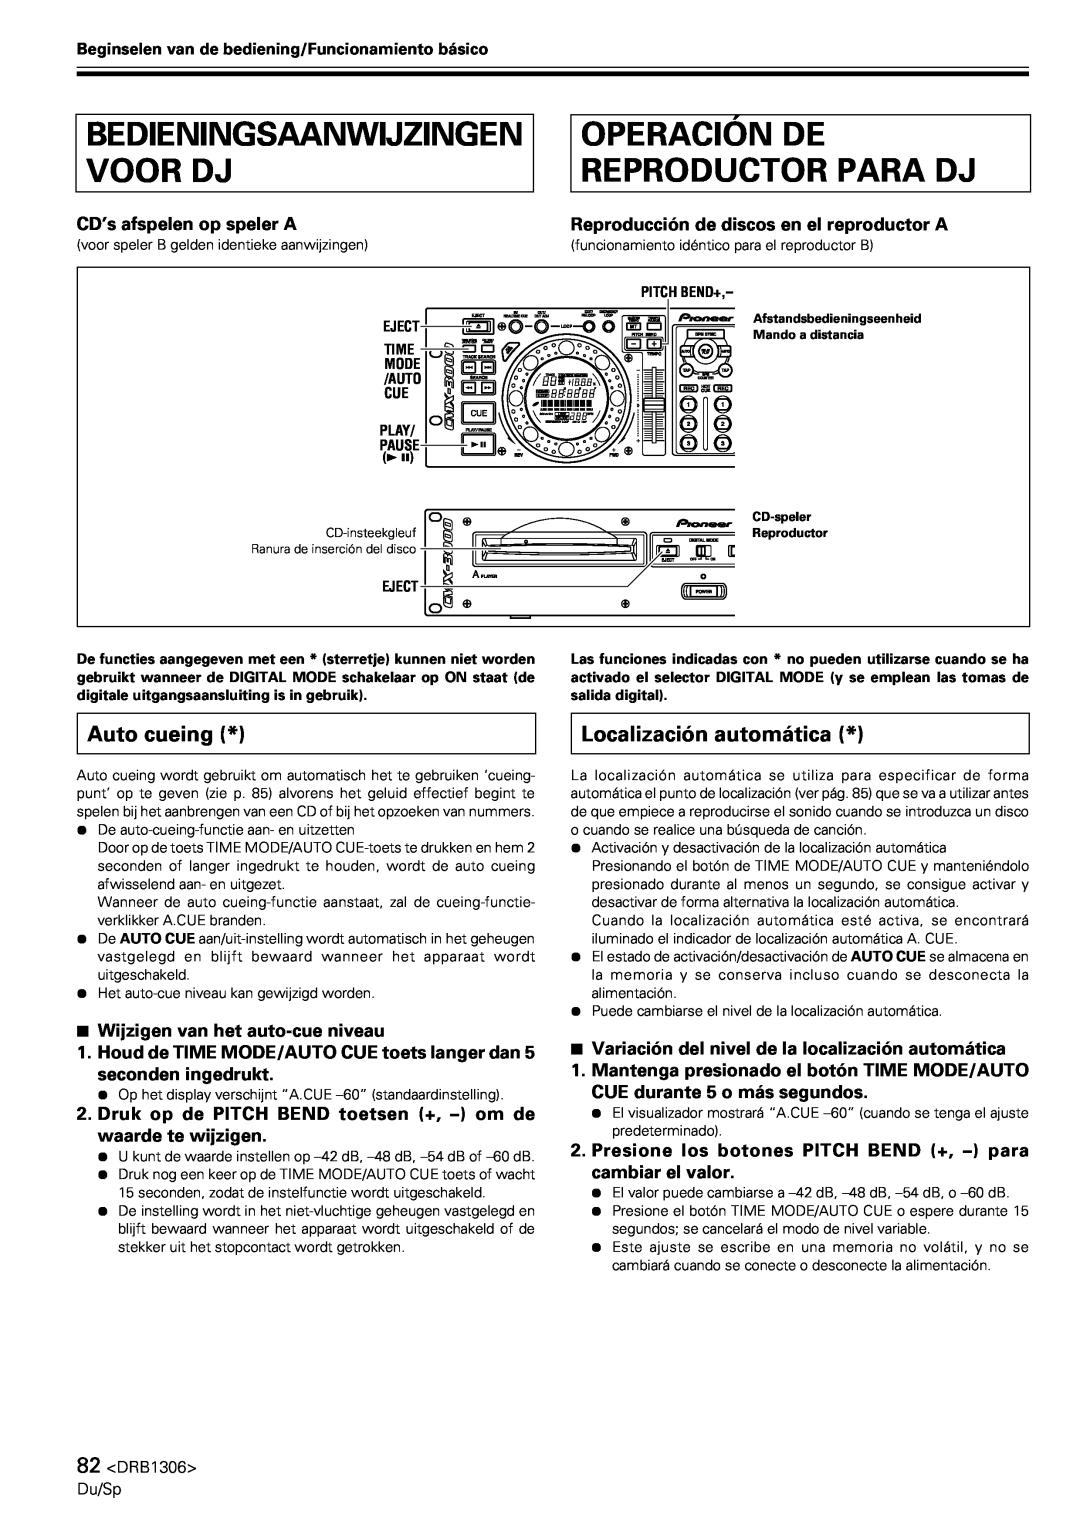 Pioneer CMX-3000 Operación De Reproductor Para Dj, Bedieningsaanwijzingen Voor Dj, Auto cueing, Localización automática 